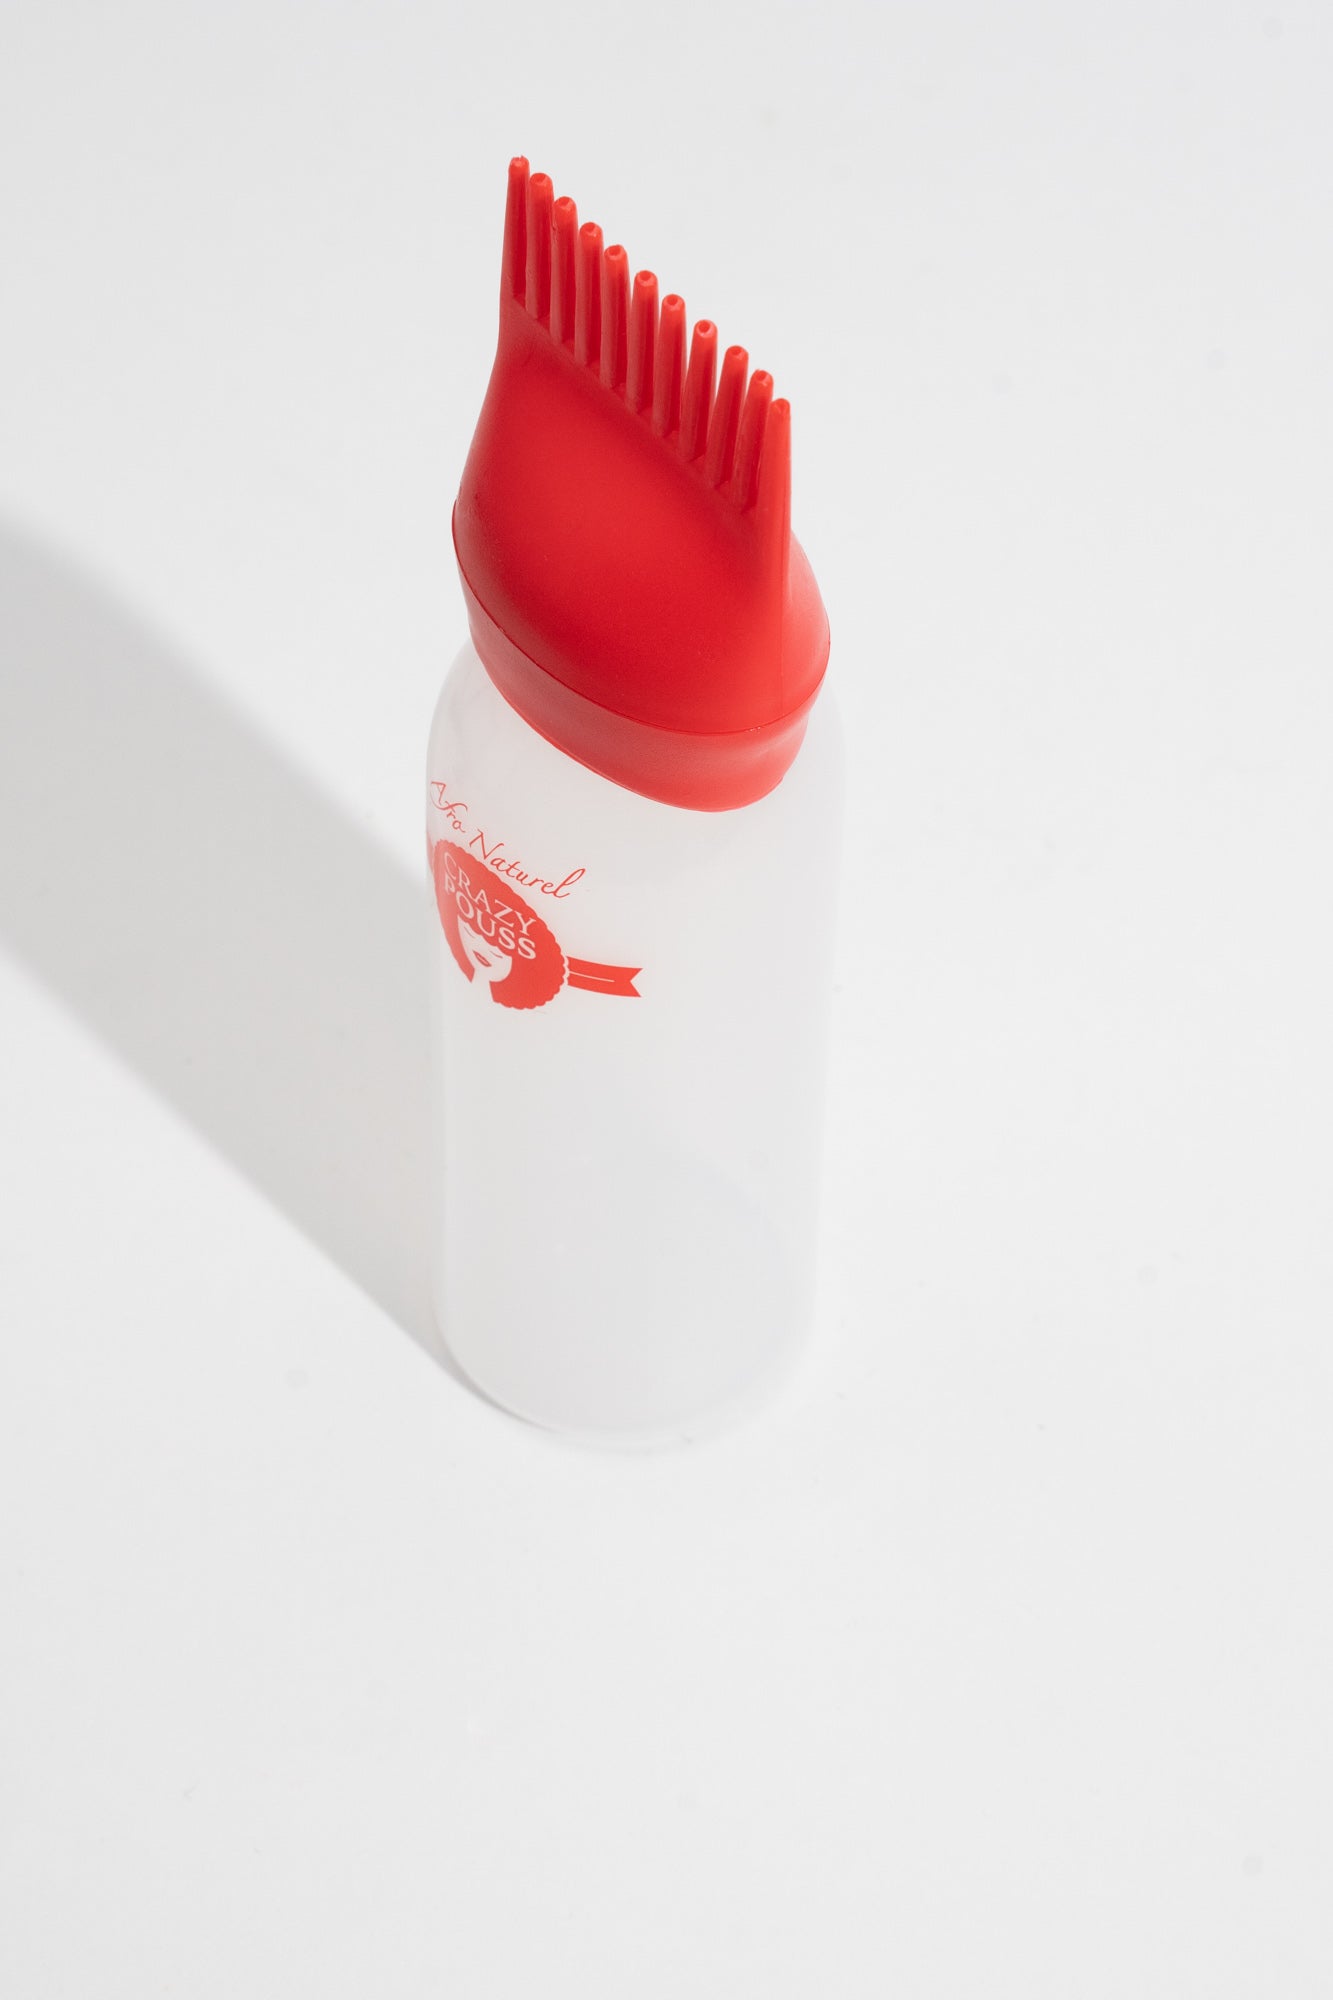 CRAZY POUSS - Flacon applicateur d'huiles - Rouge et blanc - Accessoire avec embout pour appliquer les huiles sur vos cheveux